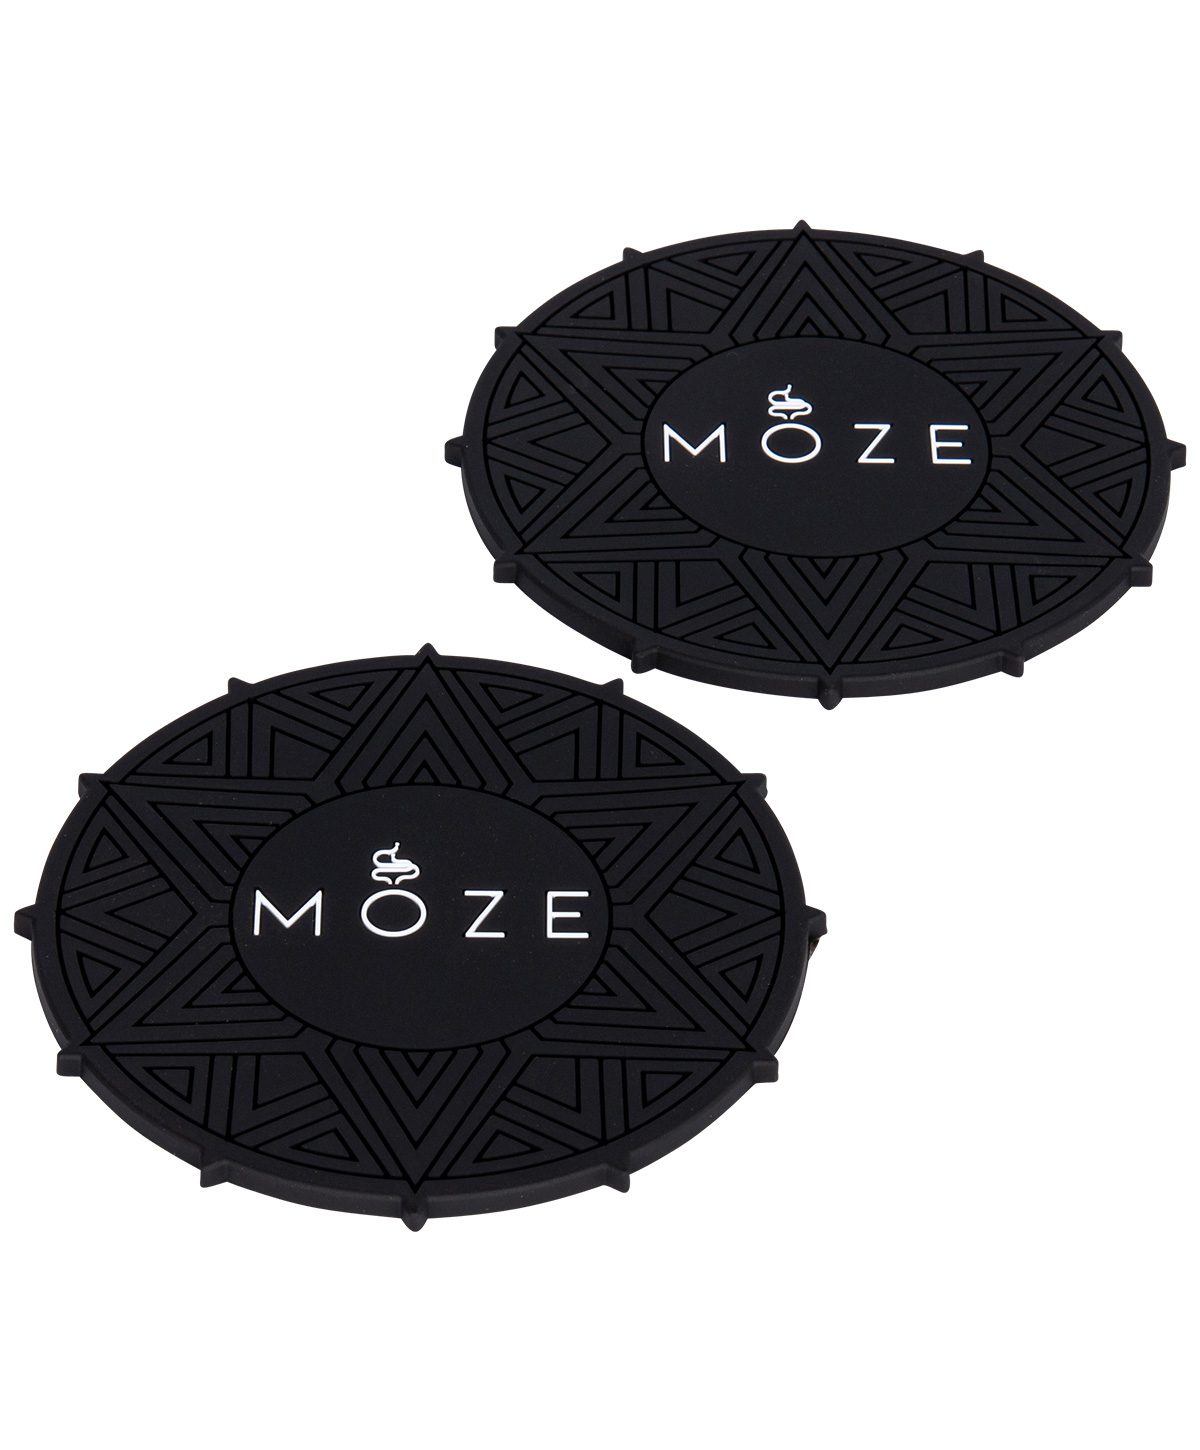 Moze Getränkuntersetzer (2er Set) - Black/White